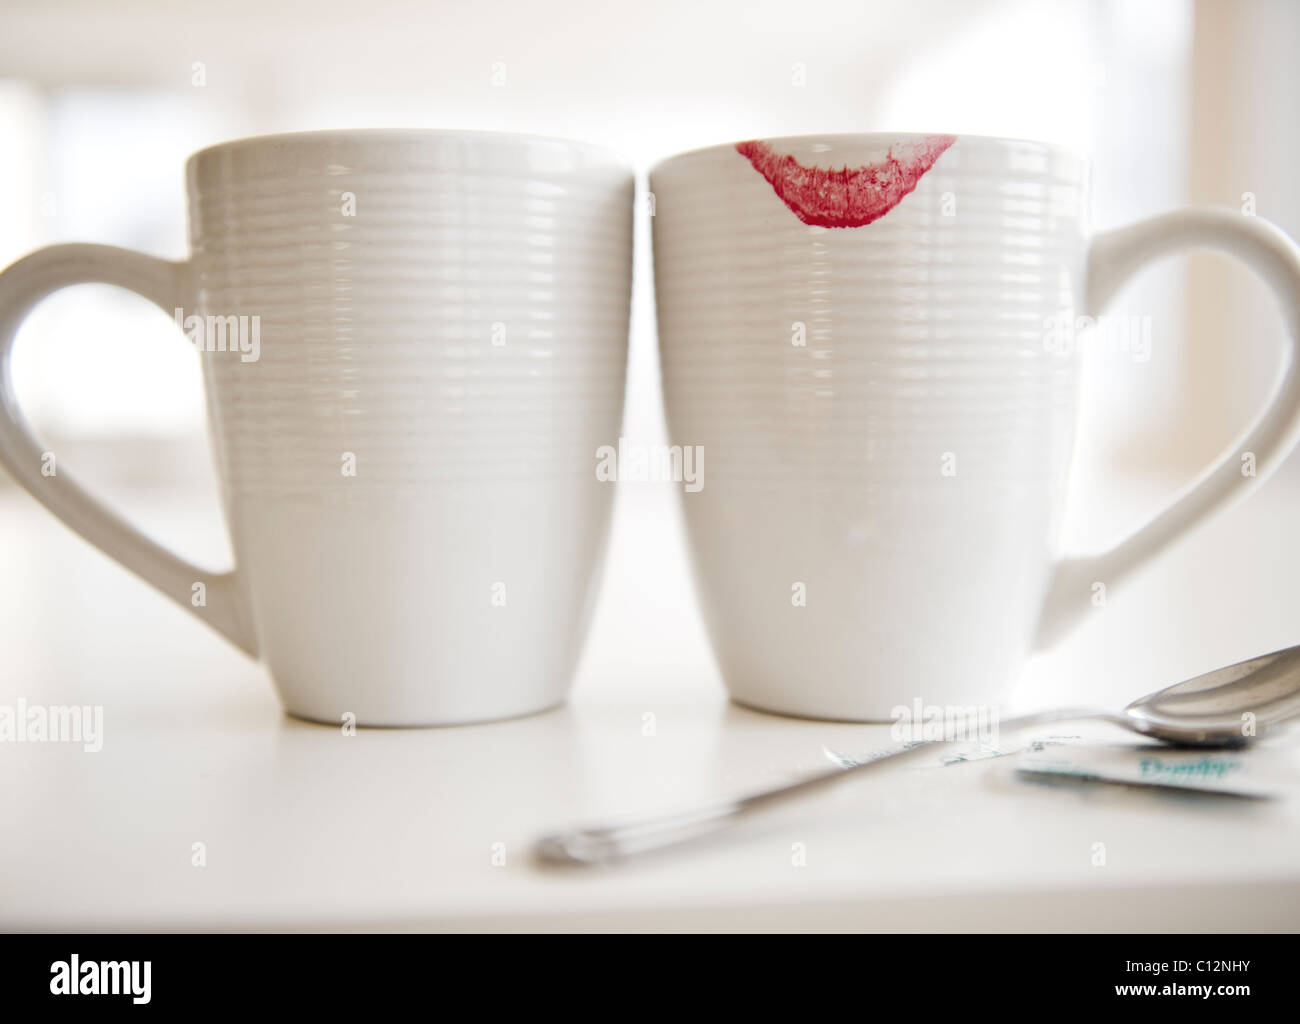 Stati Uniti d'America, New Jersey, Jersey City, close up di tazze da caffè, uno con il rossetto rosso segno sul bordo Foto Stock